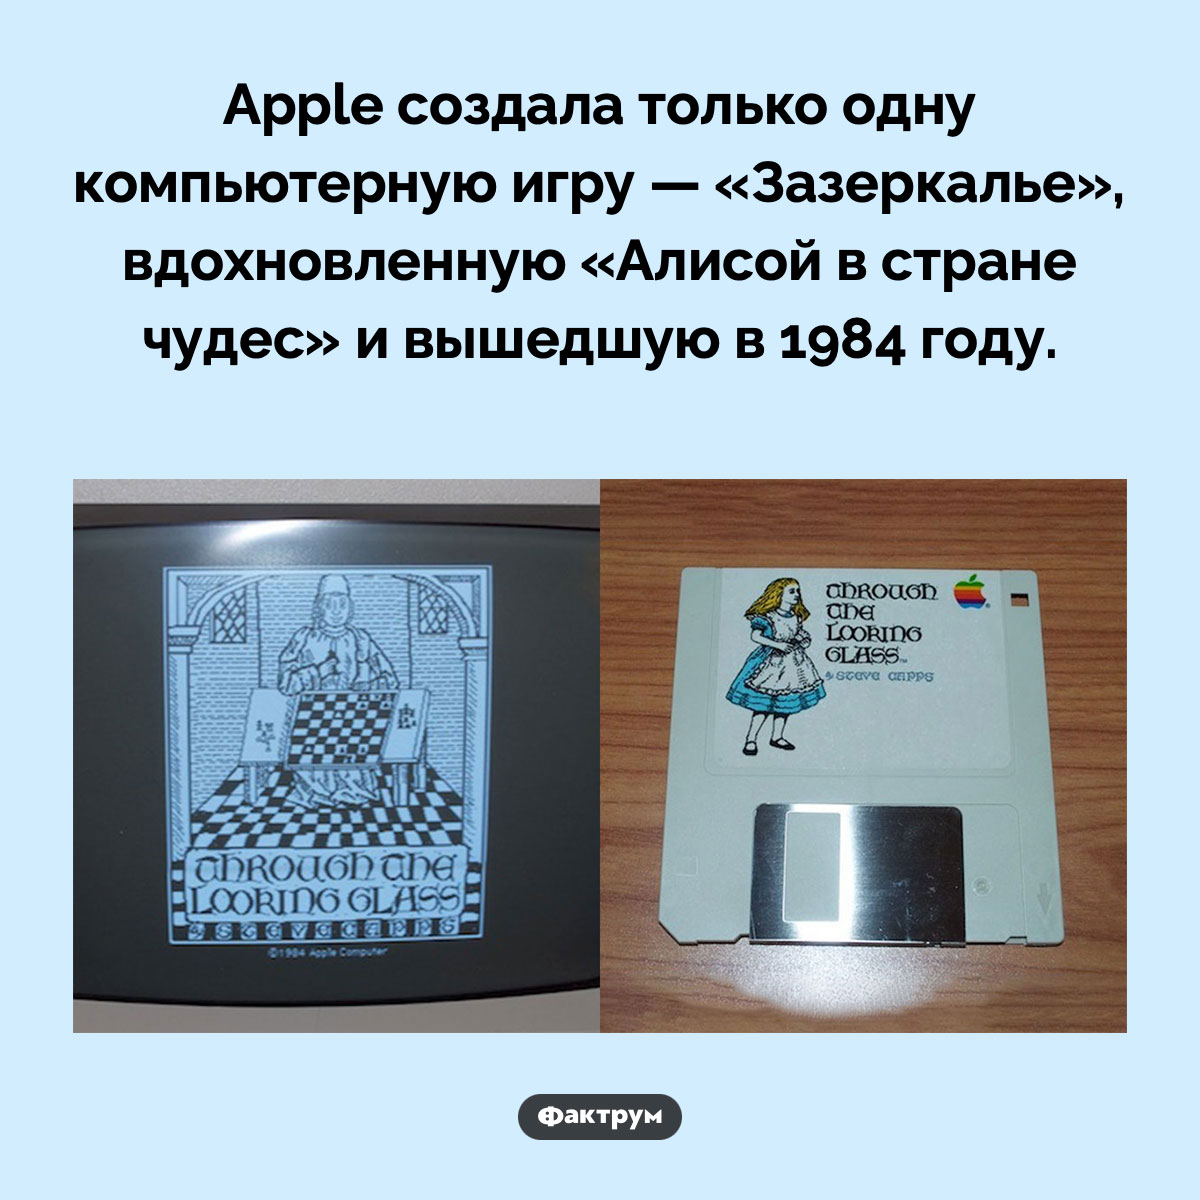 Apple создала только одну компьютерную игру. Apple создала только одну компьютерную игру — «Зазеркалье», вдохновленную «Алисой в стране чудес» и вышедшую в 1984 году.